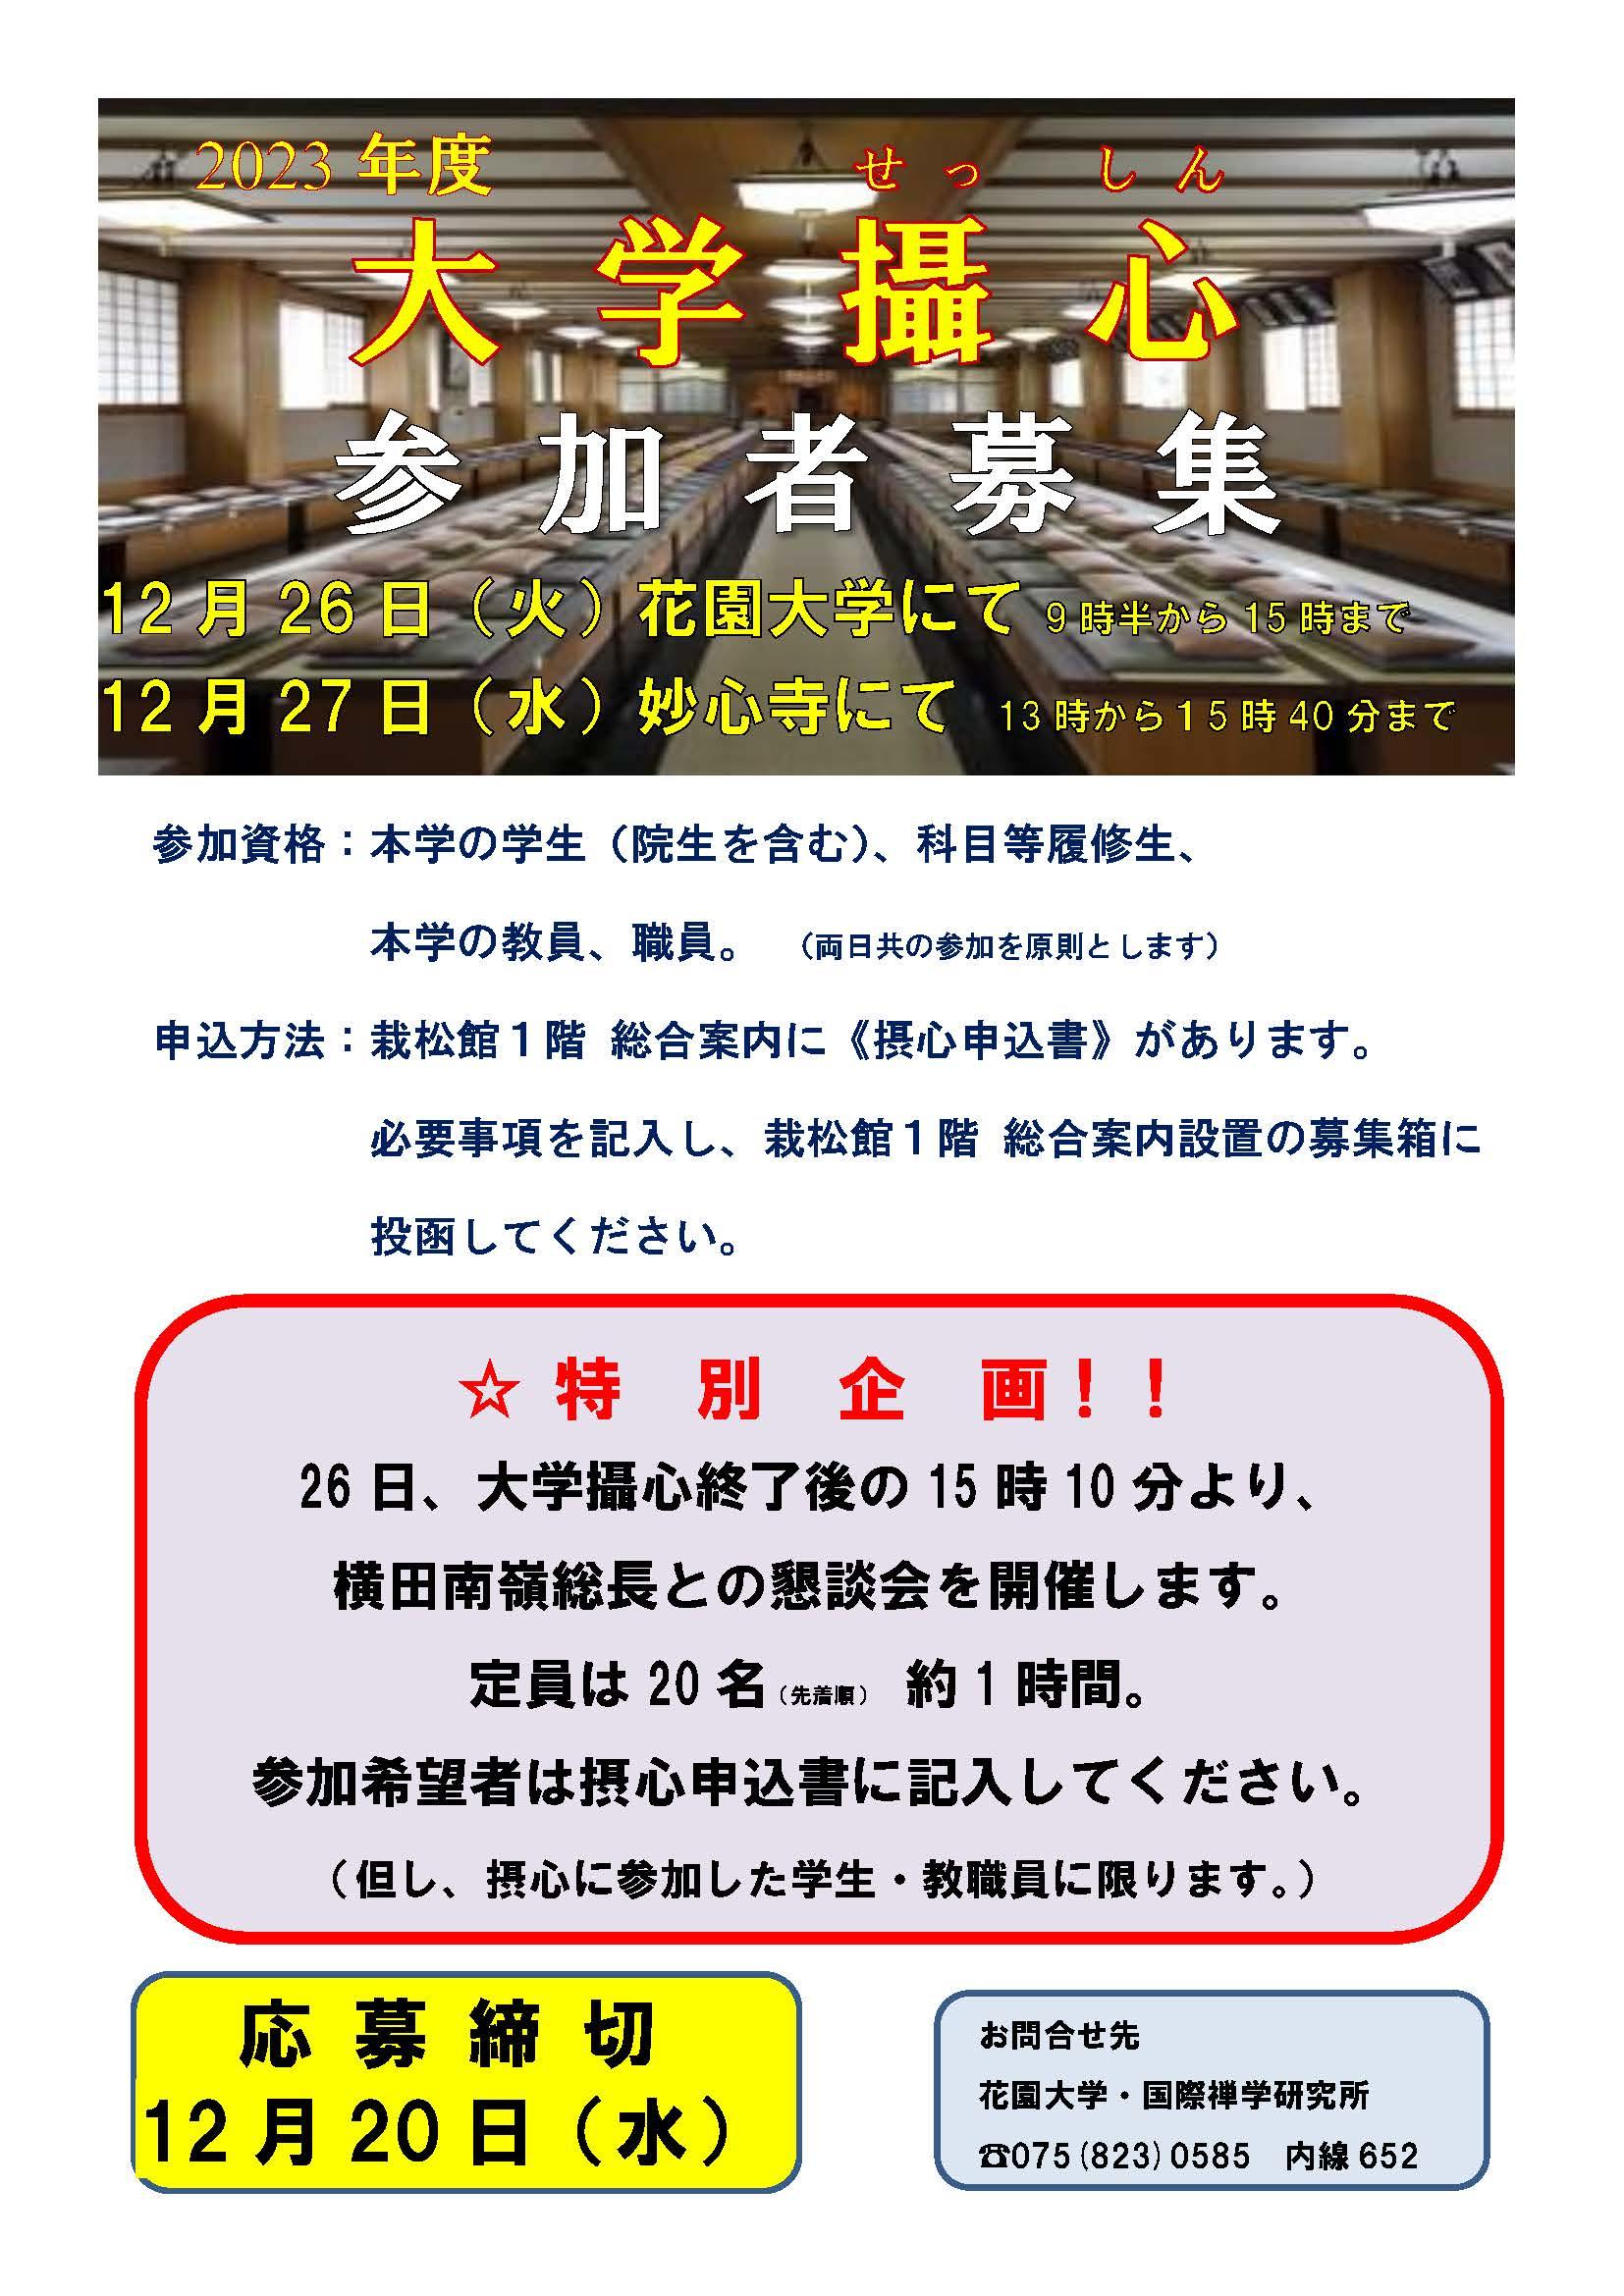 https://www.hanazono.ac.jp/event/e3edc7f9f54066dde7935c7cbed11e11e9a98a91.jpg